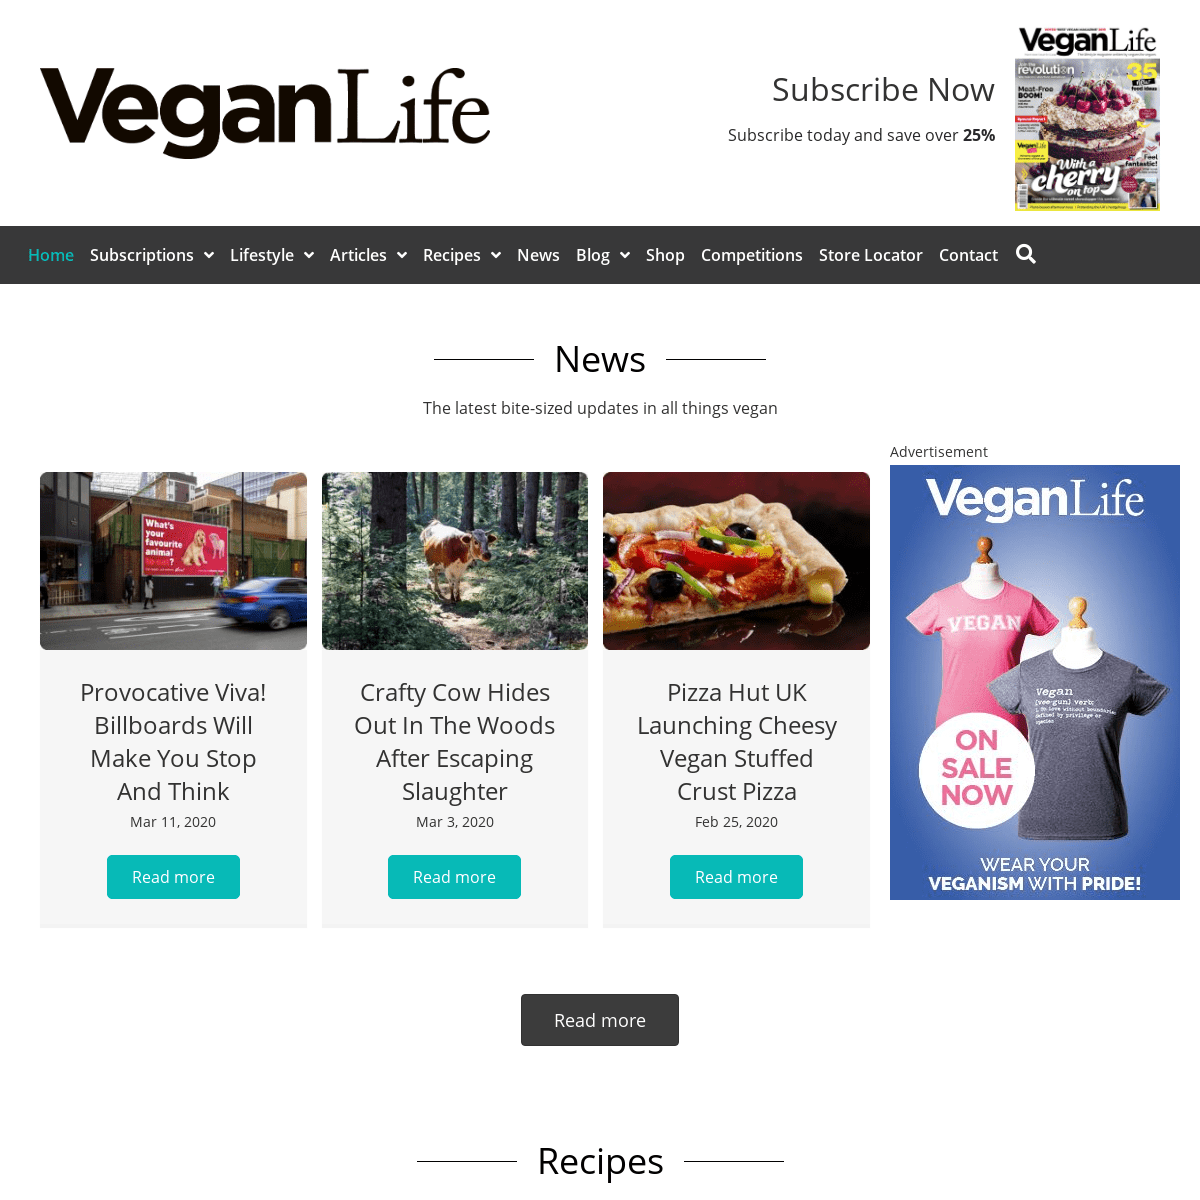 A complete backup of veganlifemag.com